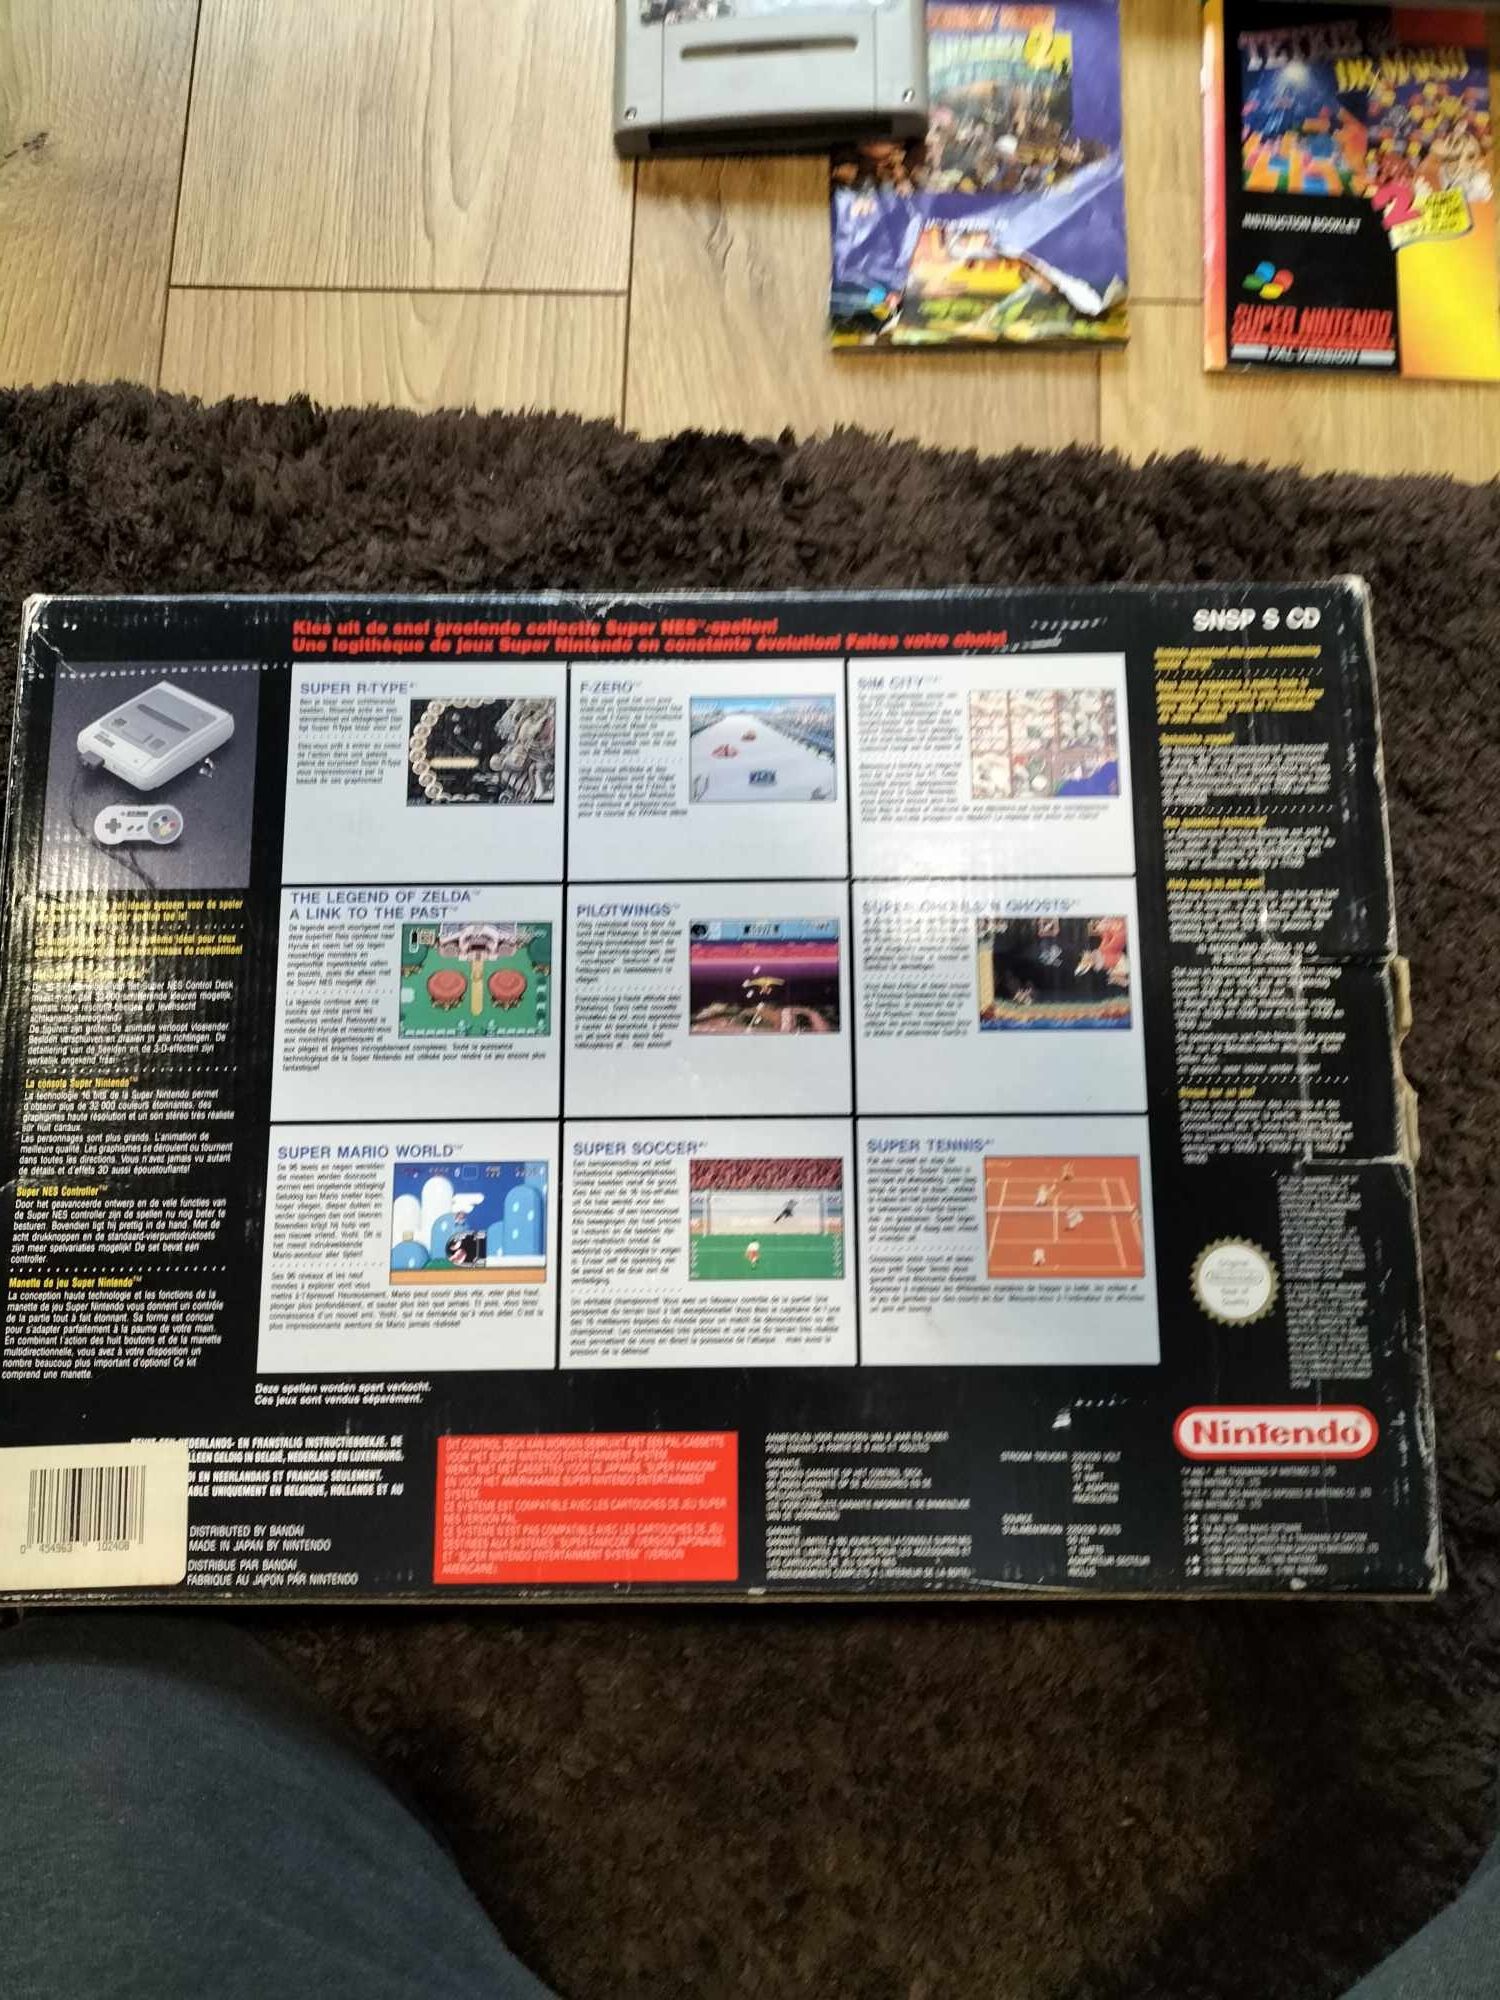 Band casete super Nintendo și cutie consola originala